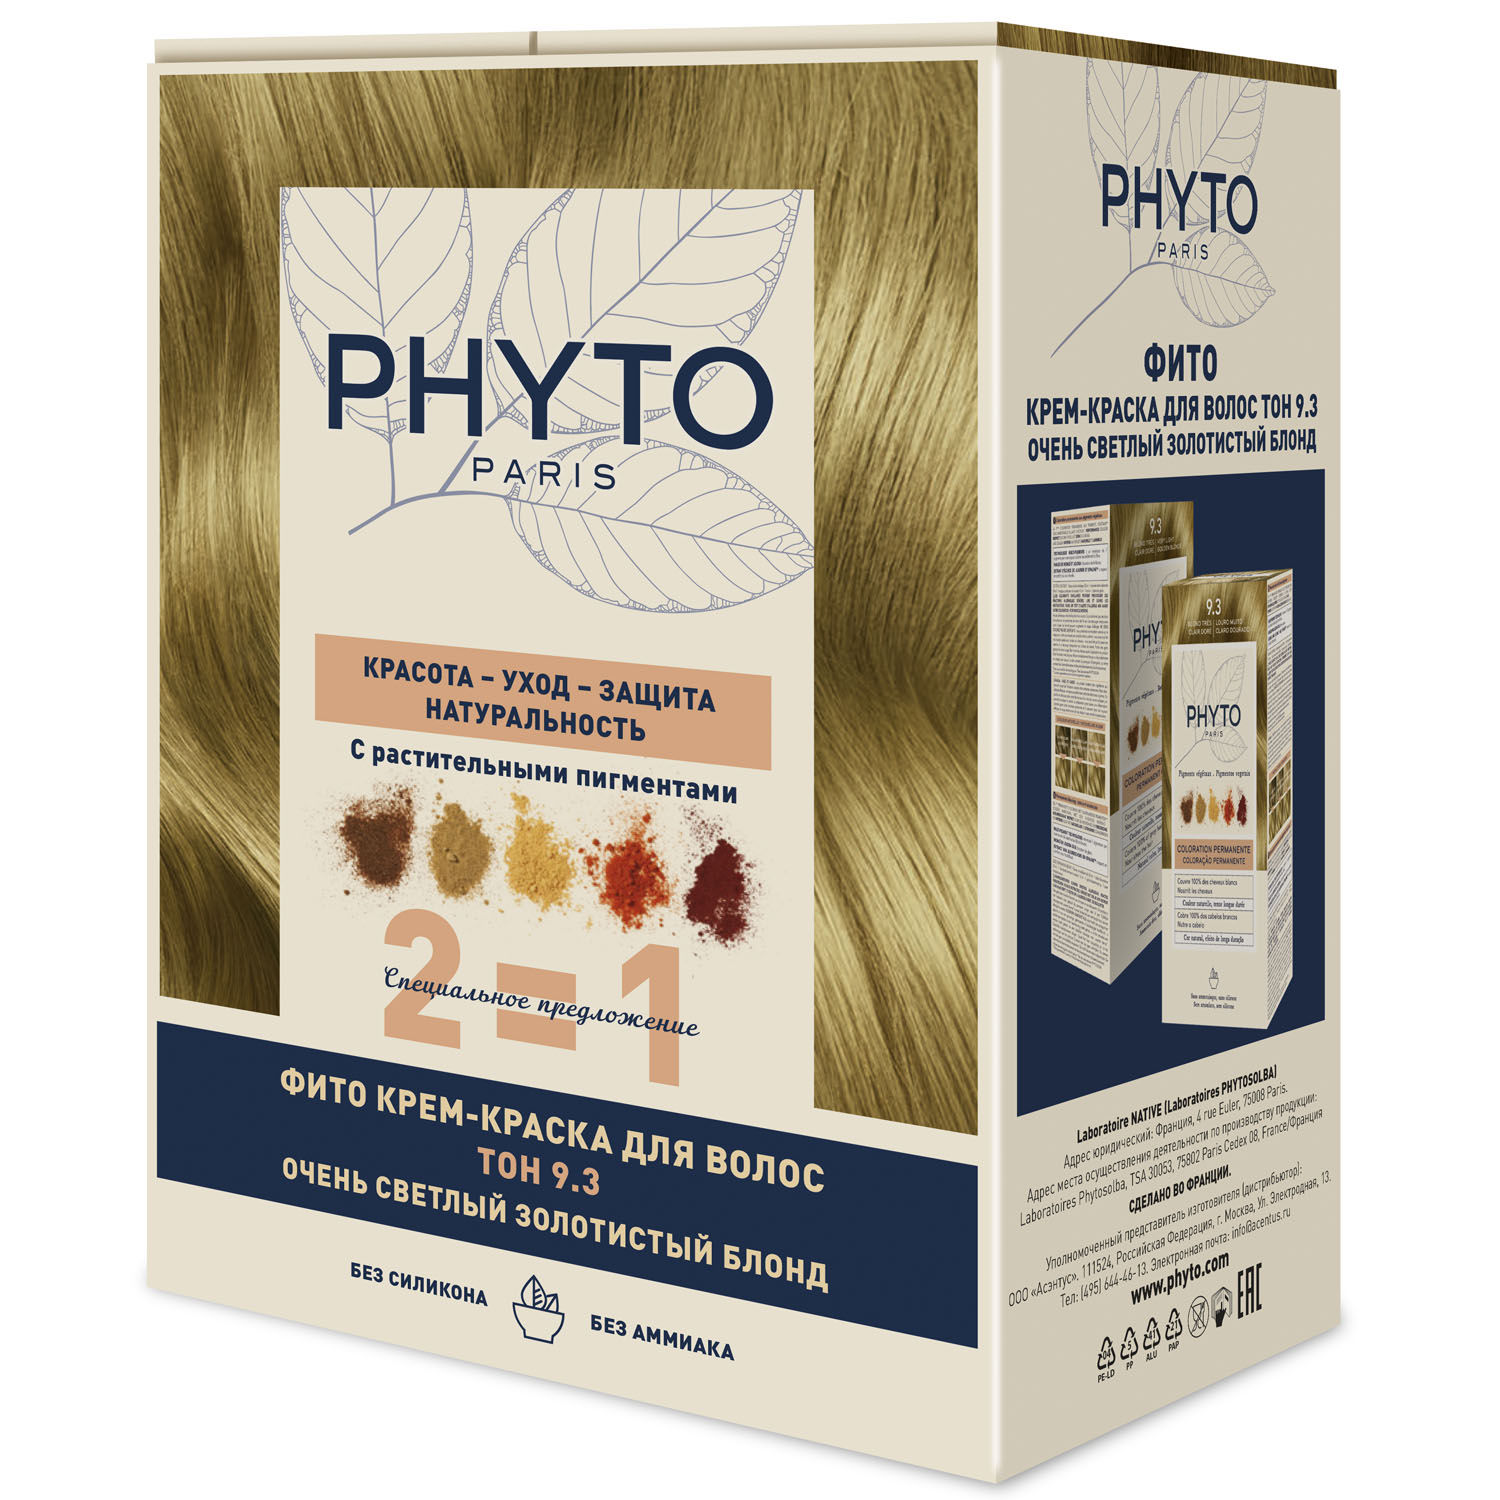 Phyto Крем-краска для волос тон 9.3 очень светлый золотистый блонд, 2 шт (Phyto, Phytocolor) крем краска phyto phytocolor очень светлый блонд тон 9 д волос